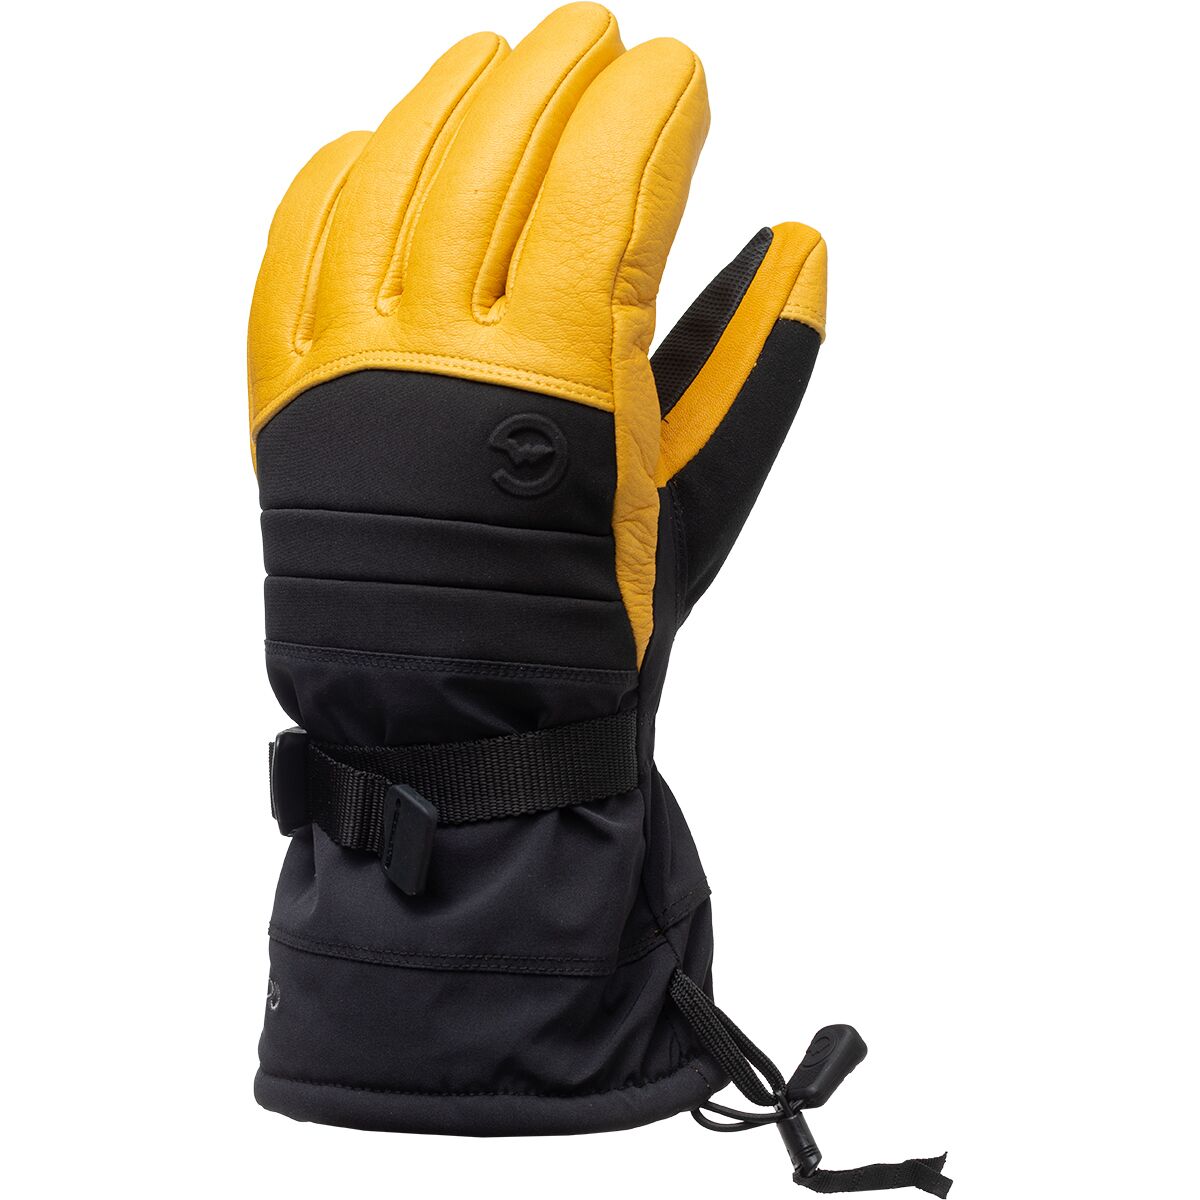 Gordini Polar II Glove - Men's Black Gold